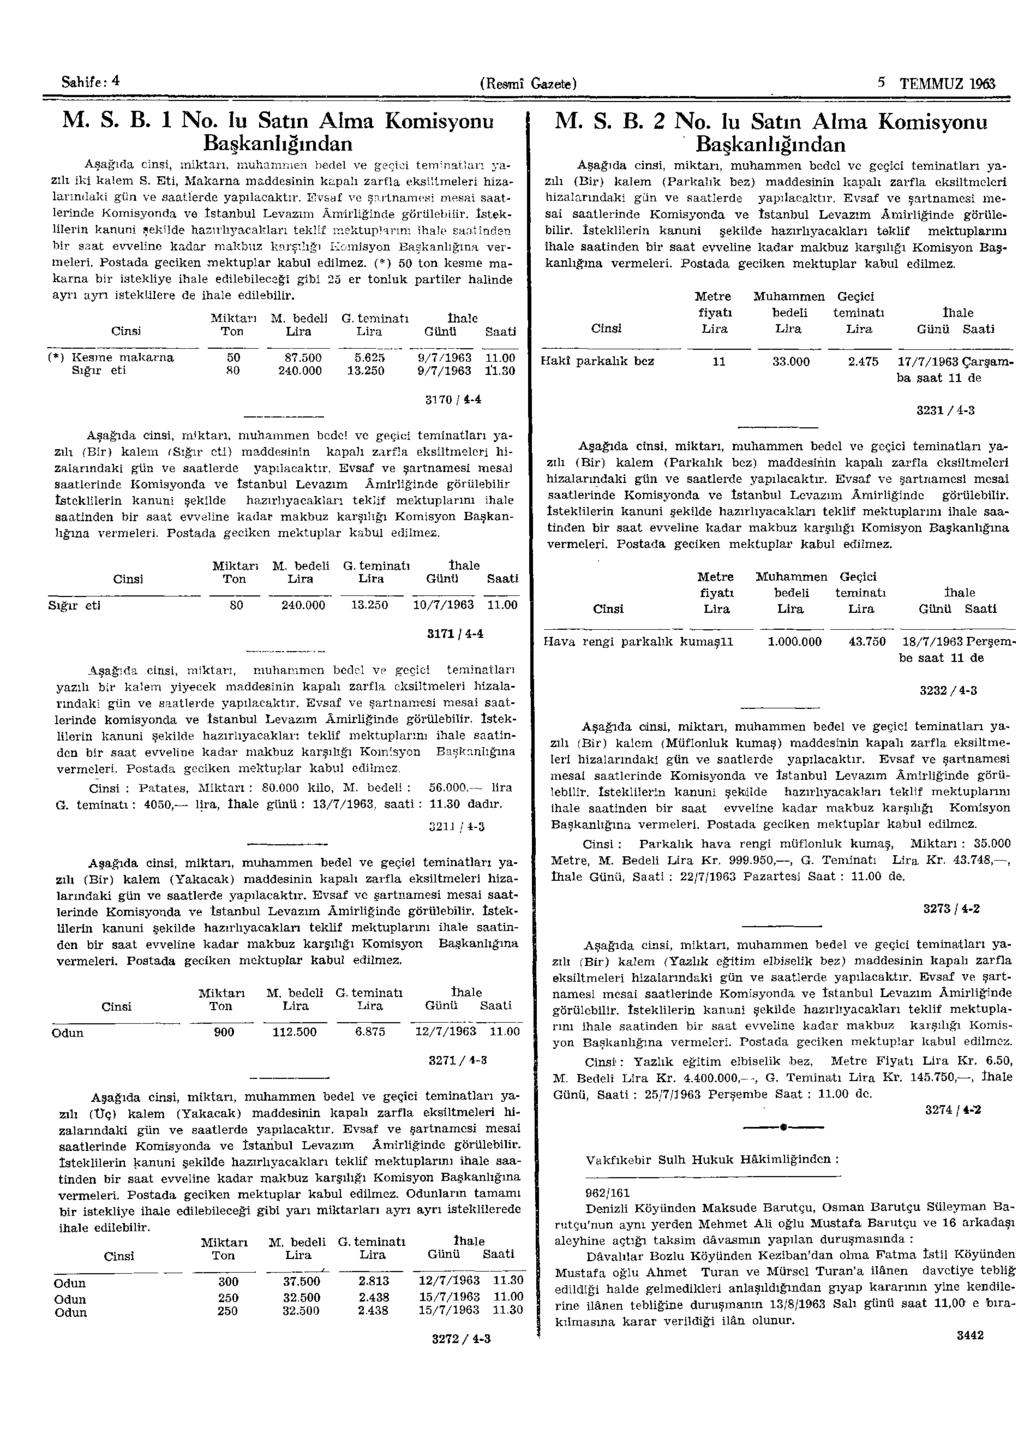 Sahife: 4 (Resmî Gazelte) 8 TEMMUZ 1963 M. S. B. 1 No. lu Satın Alma Komisyonu Başkanlığından Aşağıda cinsi, miktarı, muhammen bedel ve geçici teminatları yazılı iki kalem S.